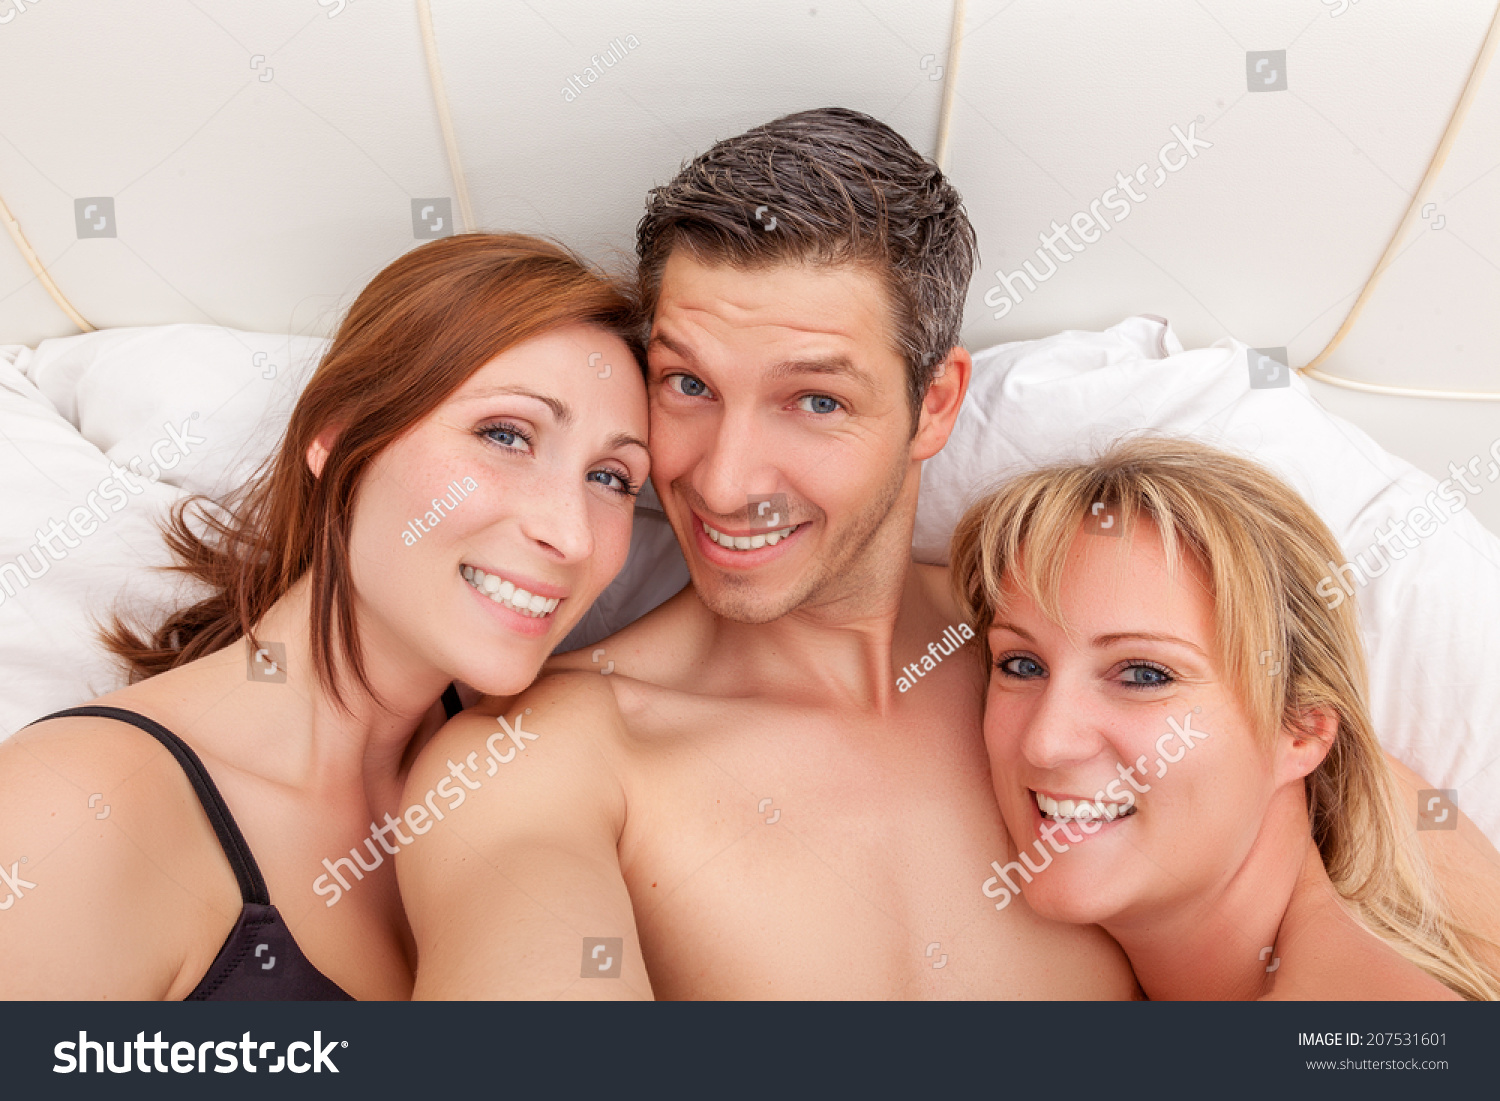 Жена на отдыхе развлекается с любовниками фото